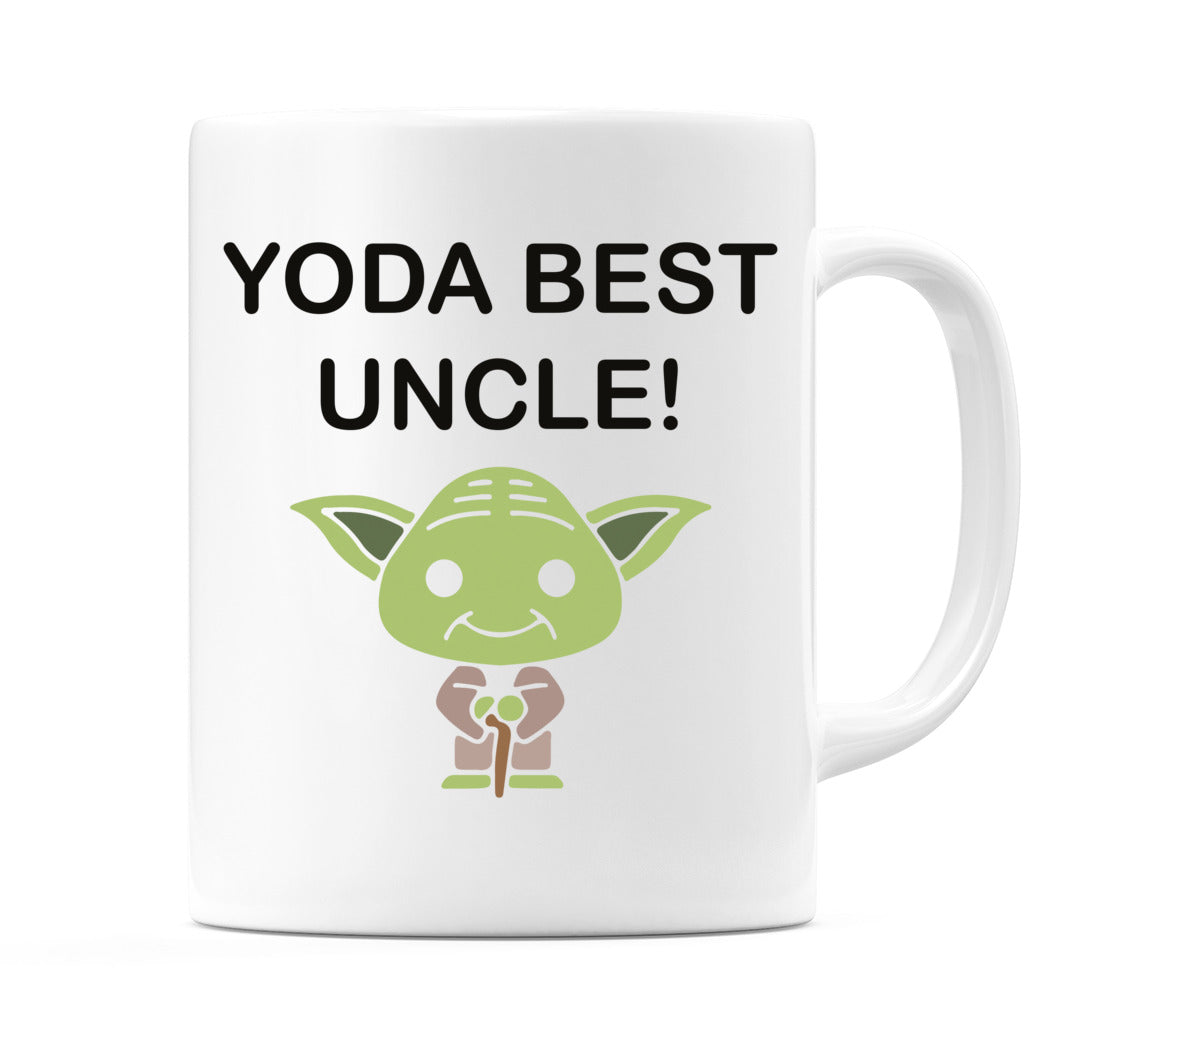 YODA BEST UNCLE! Mug